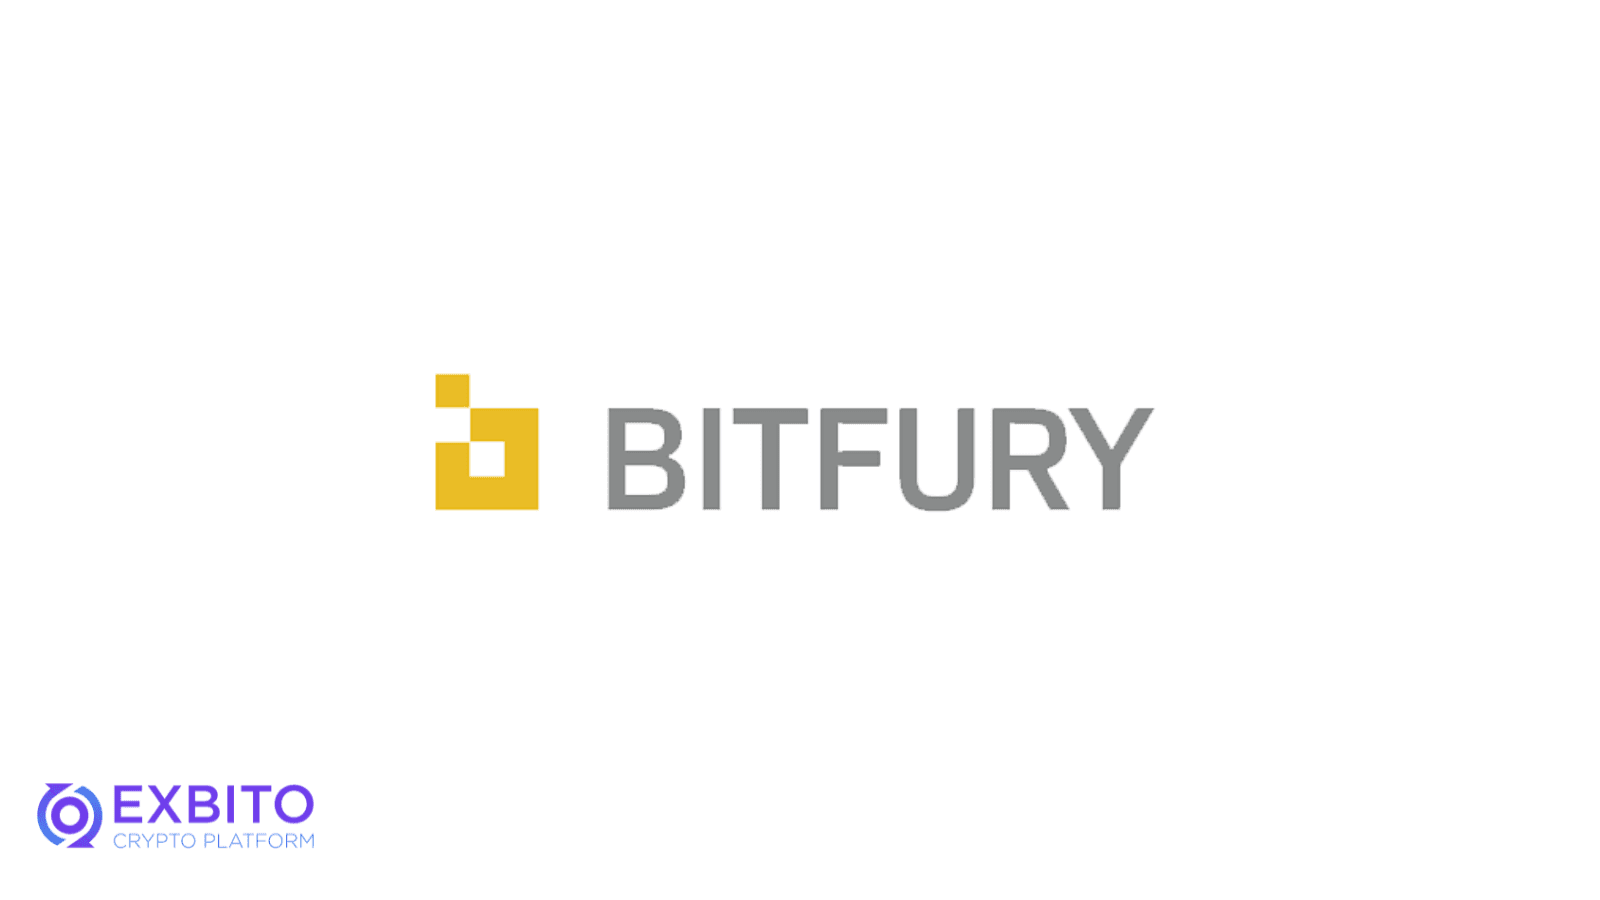 استخر استخراج بیت فیوری (Bitfury)